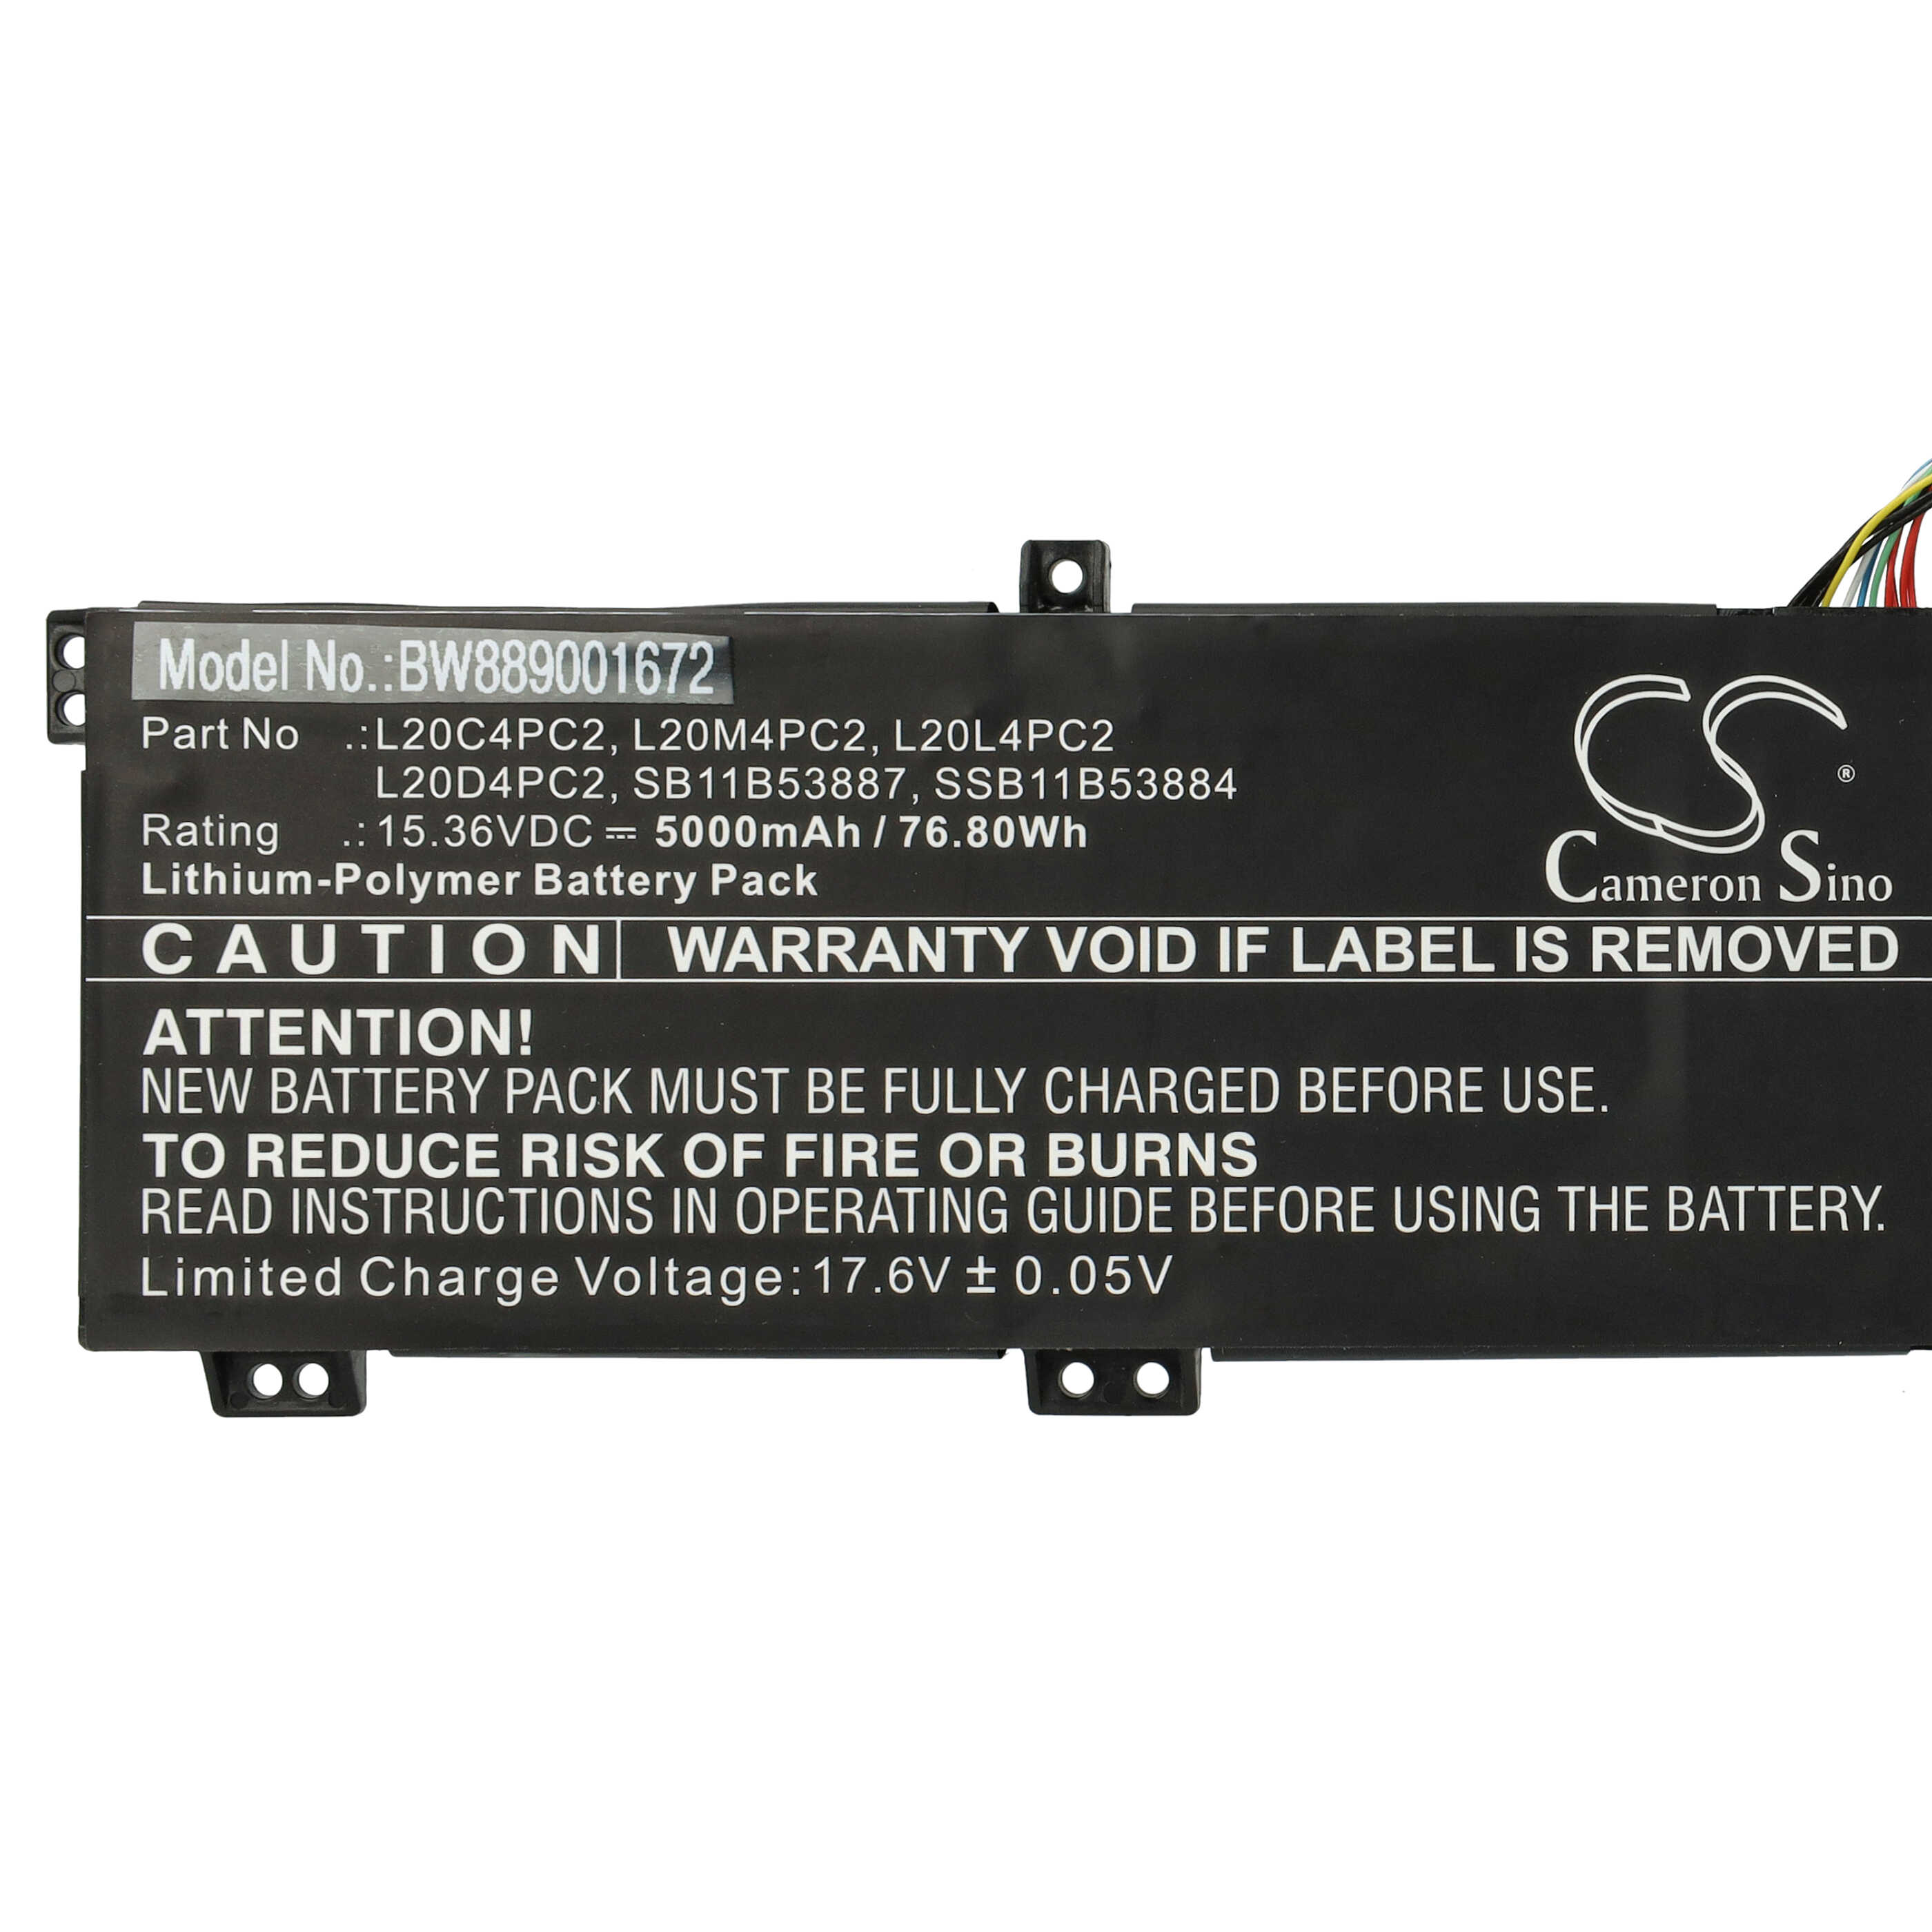 Akumulator do laptopa zamiennik Lenovo L20C4PC2, L20D4PC2, L20L4PC2, L20M4PC2 - 5000 mAh 15,36 V LiPo